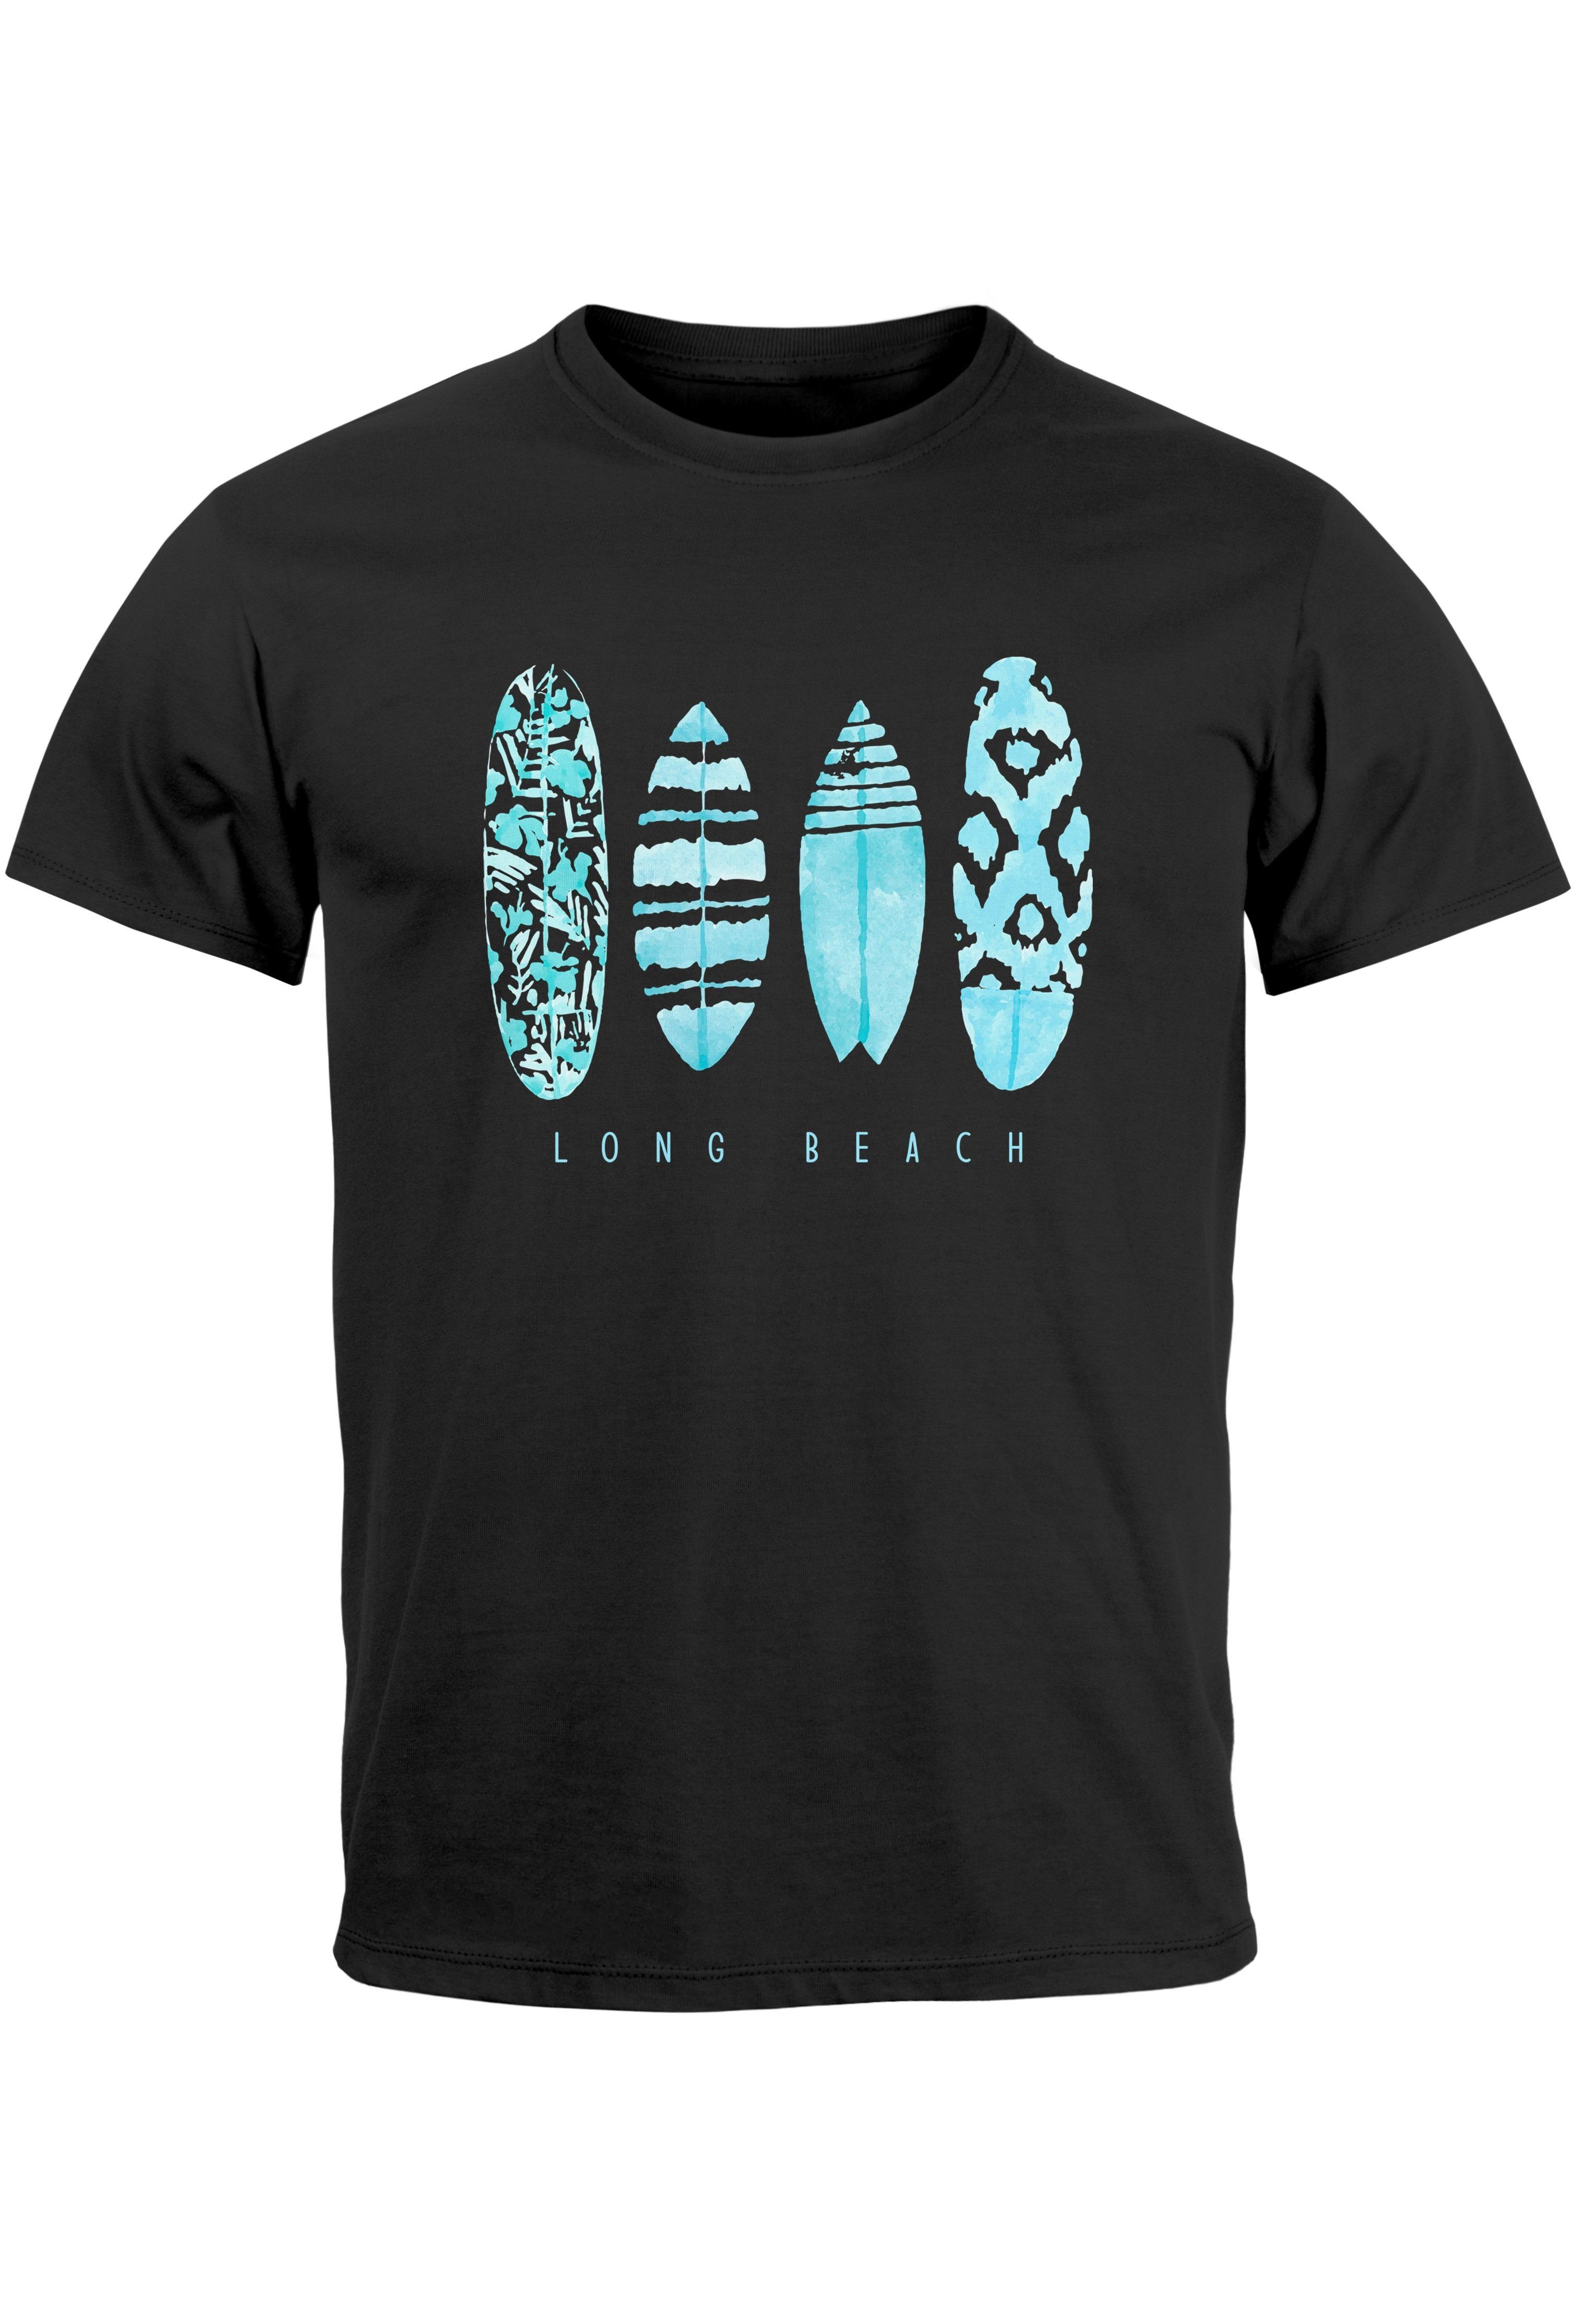 Neverless Print-Shirt Herren T-Shirt Surfing Fashion Aufdruck Long Beach Surfboard Sommer St mit Print schwarz-türkis